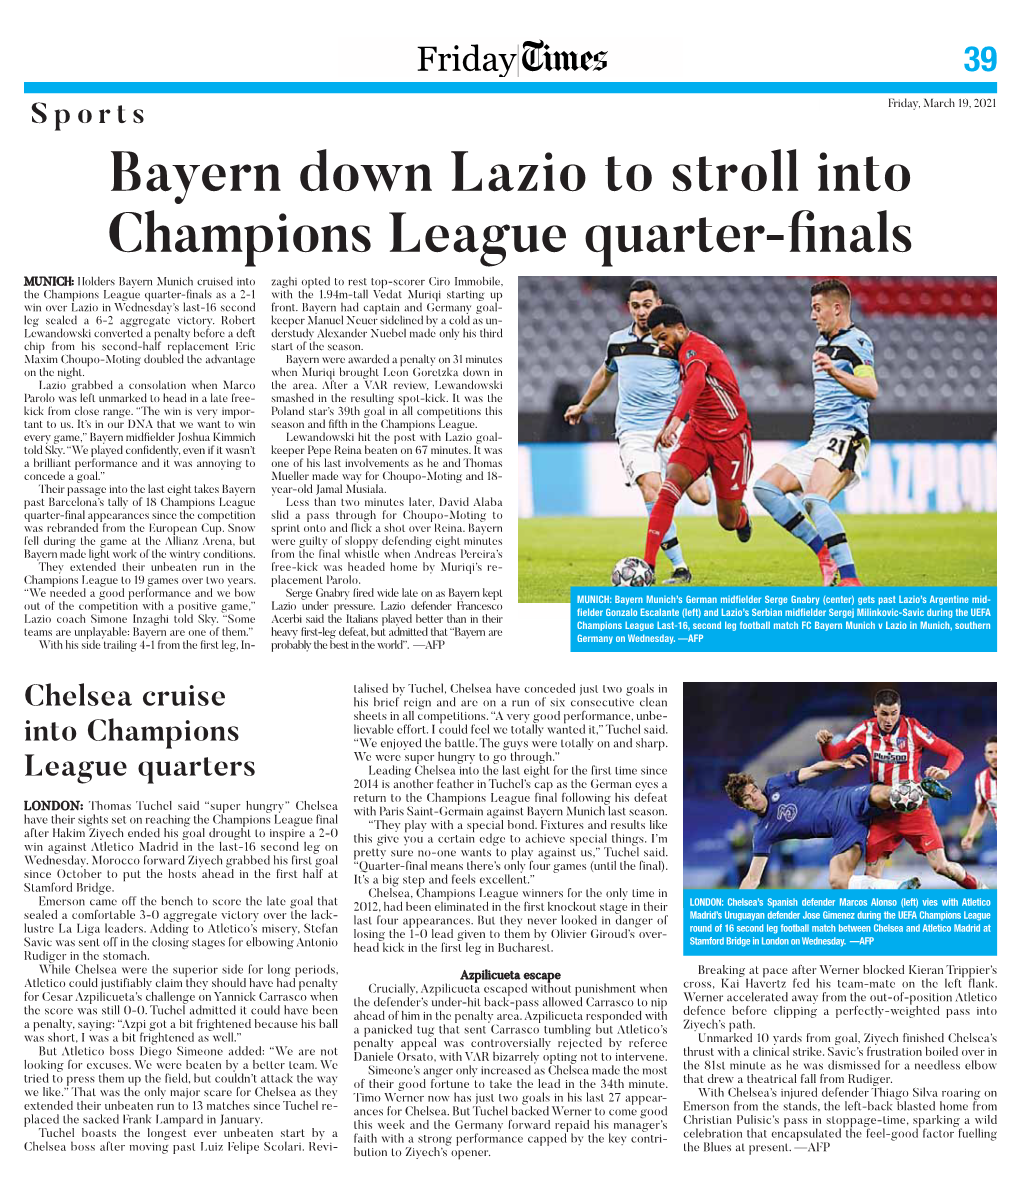 Bayern Down Lazio to Stroll Into Champions League Quarter-Finals